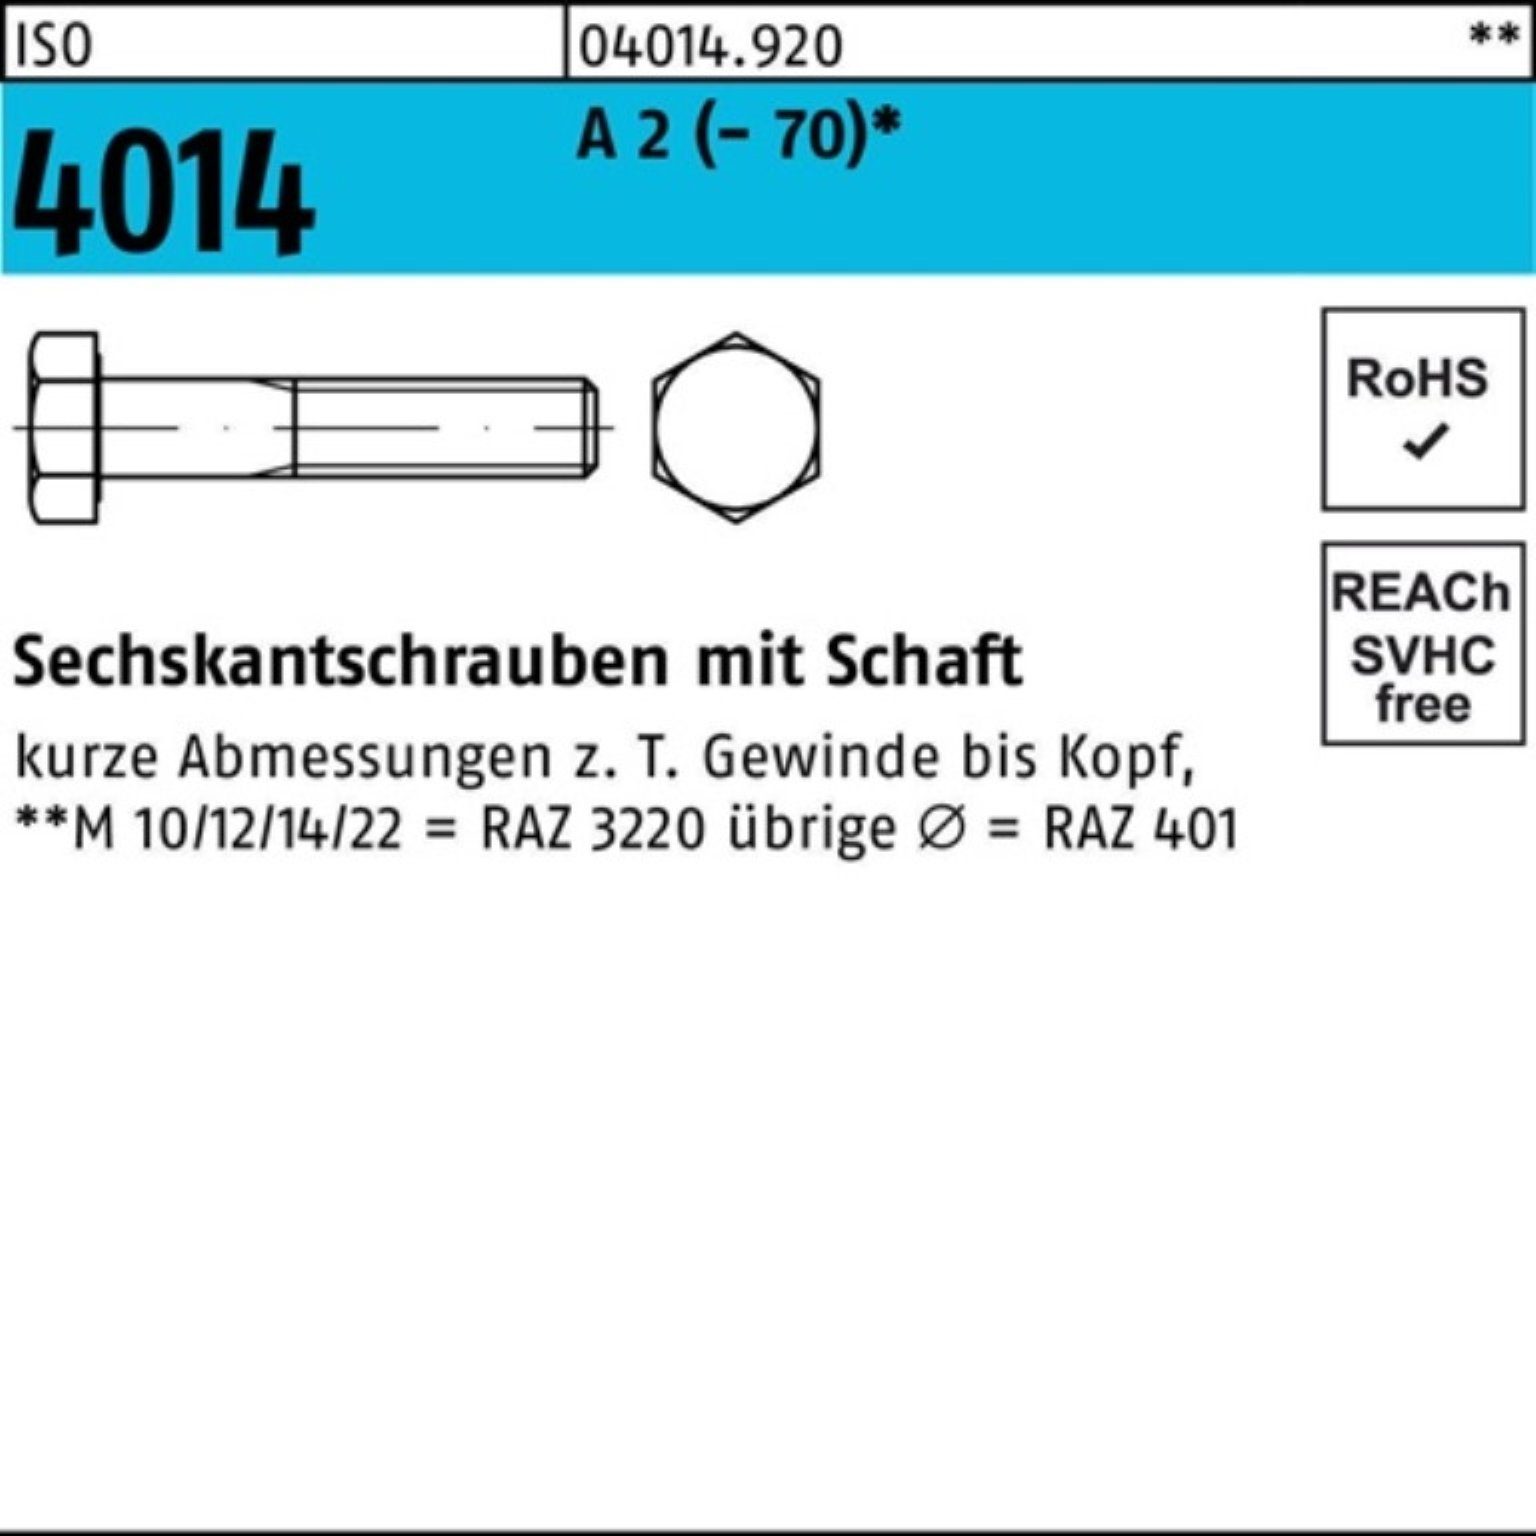 Bufab Sechskantschraube 100er Pack Sechskantschraube 1 M12x 4014 220 St (70) A 2 ISO Schaft